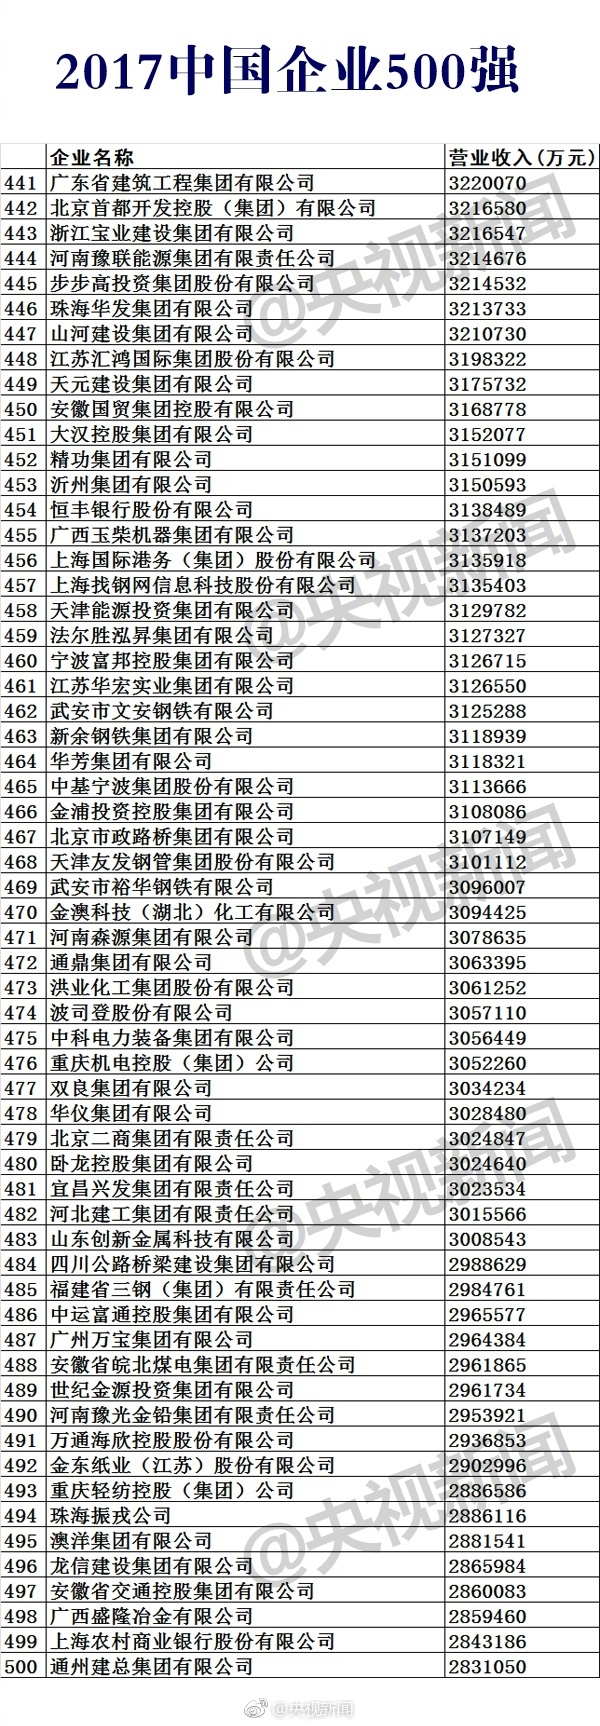 2017中国企业500强榜单公布：移动第11 华为第17